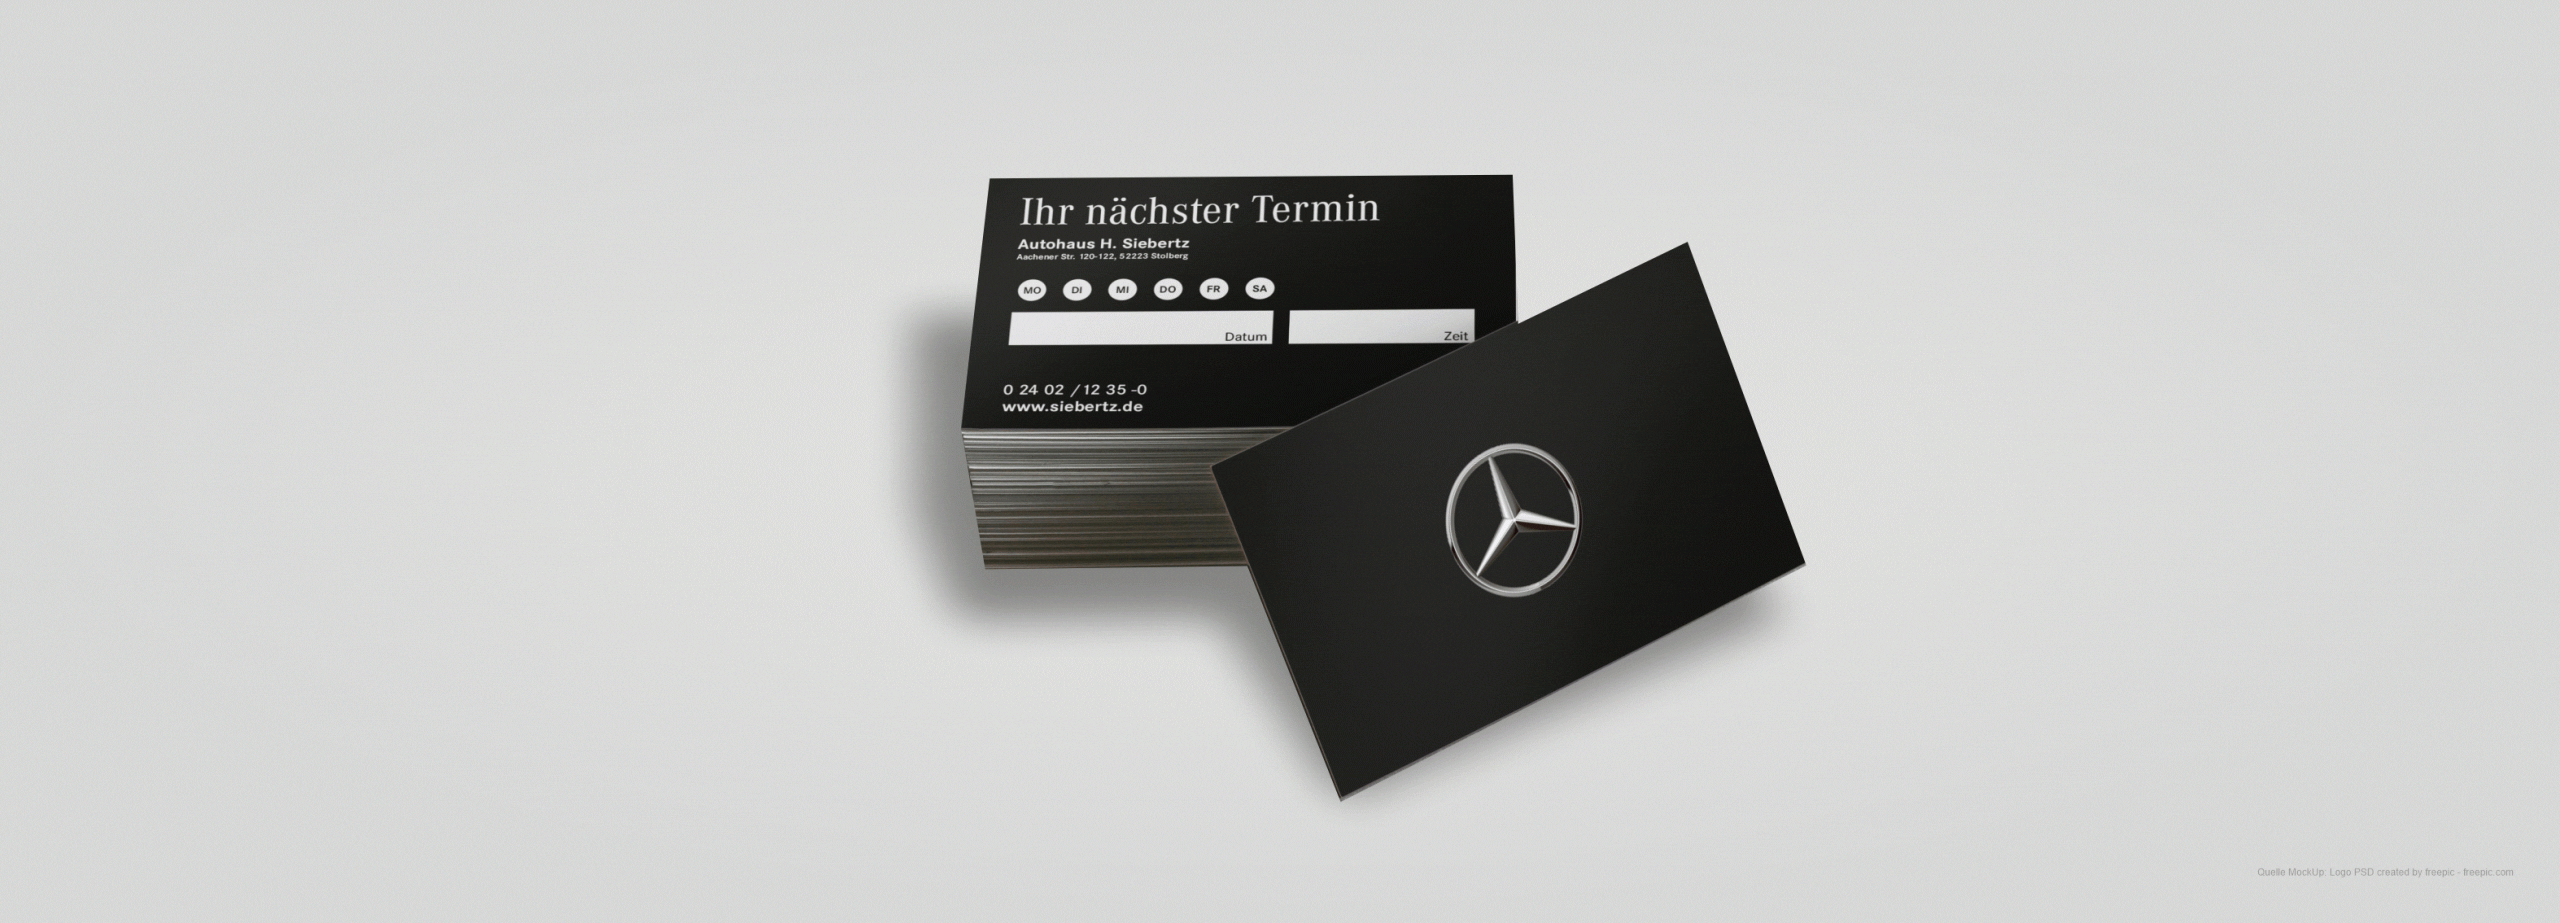 Terminkarte_Autohaus Siebertz_Grafikdesign_Schauwerbung Mennicken